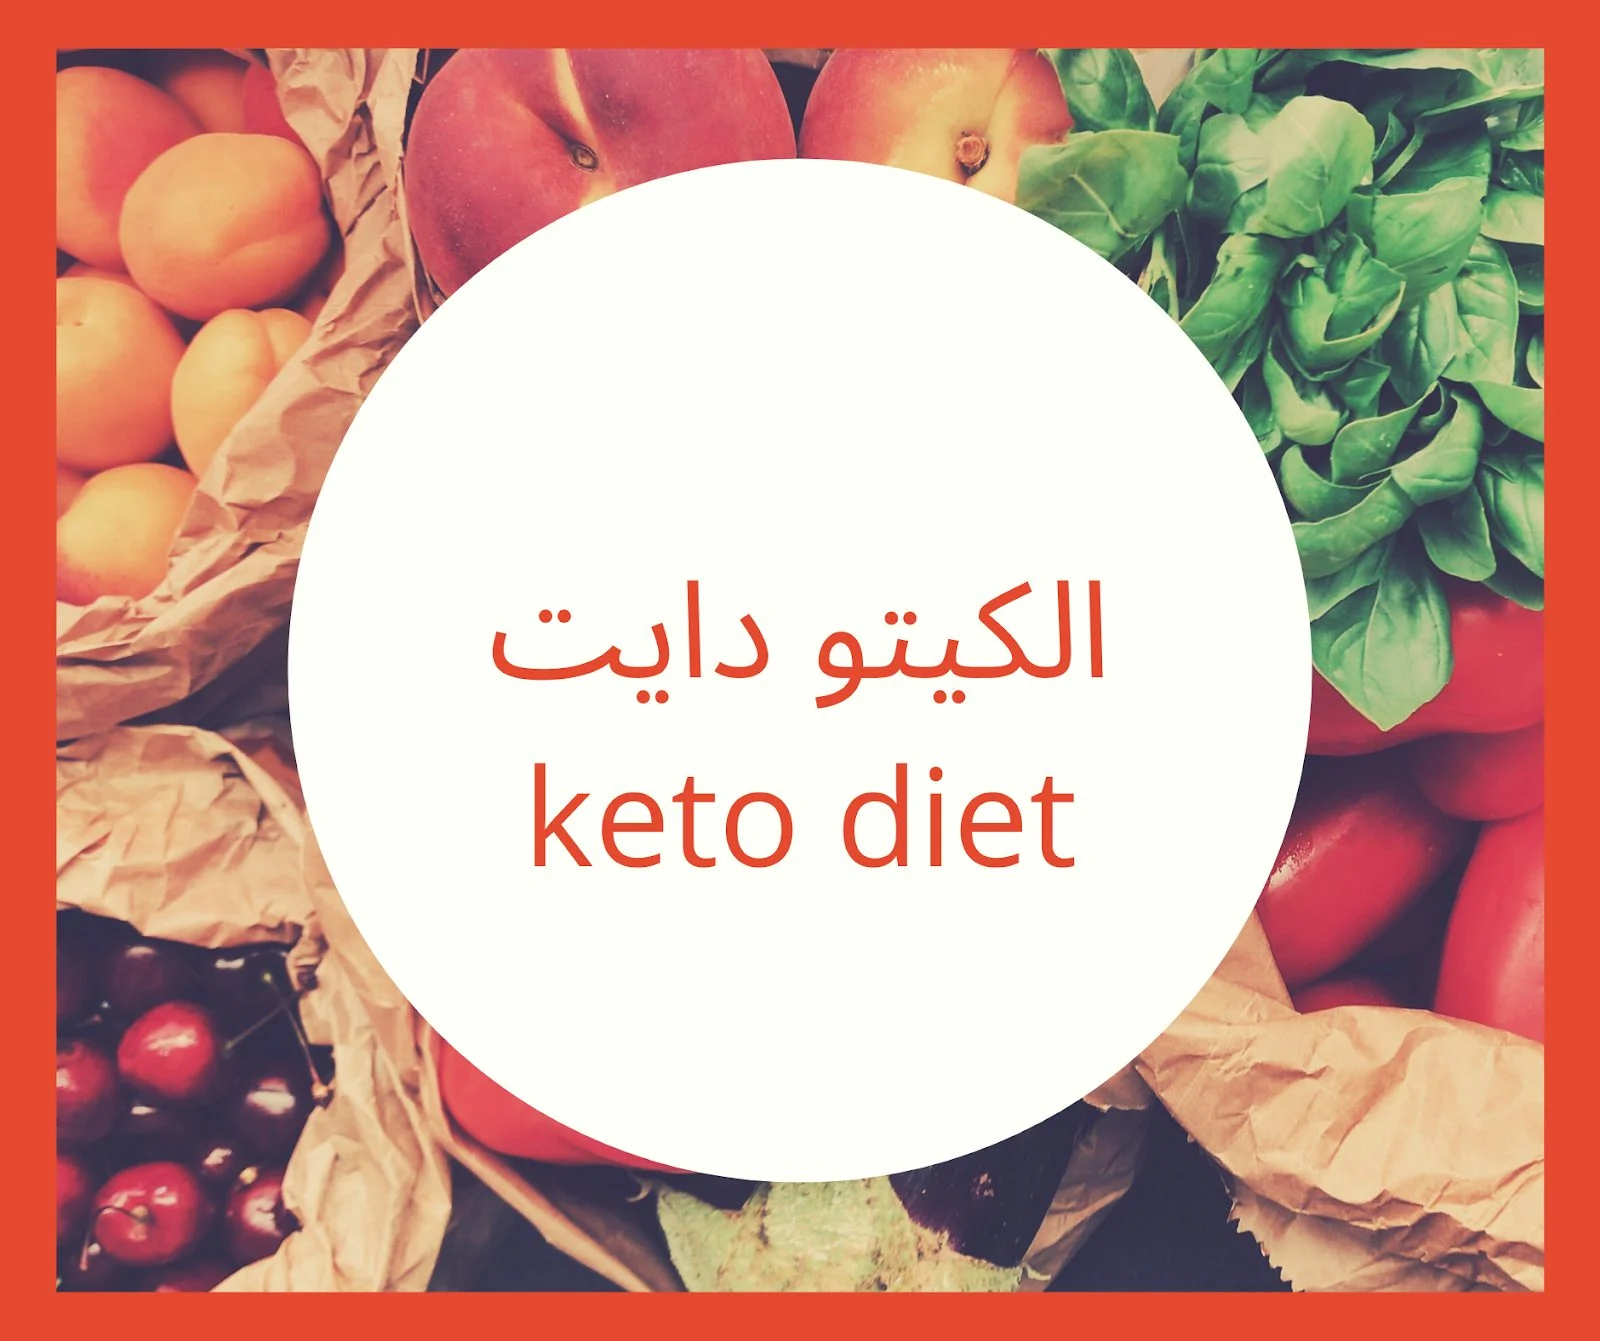 فوائد وأنواع أطعمة الكيتو لتحقيق الهدف الصحي